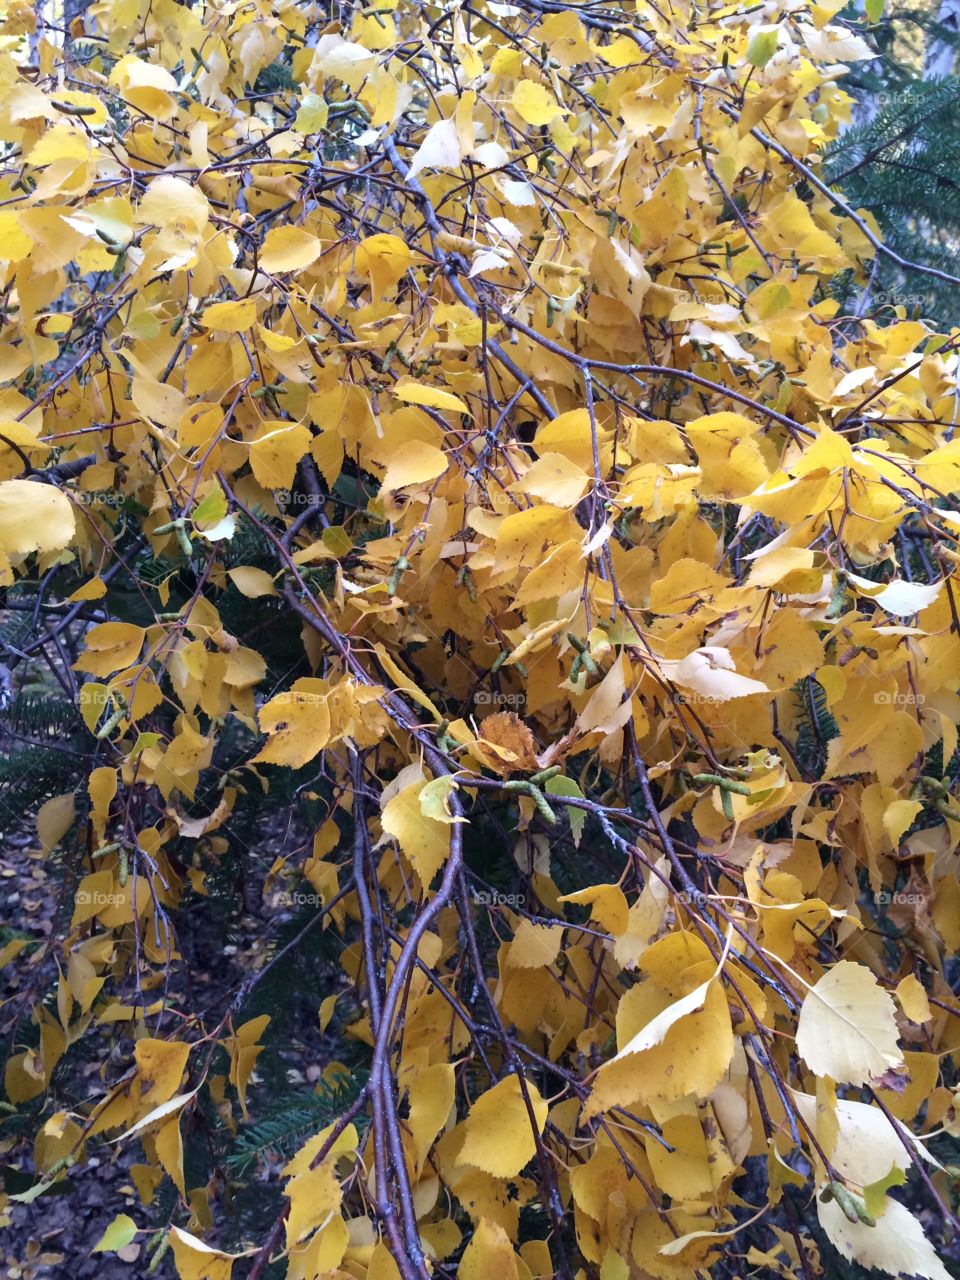 Birch tree in autumn


